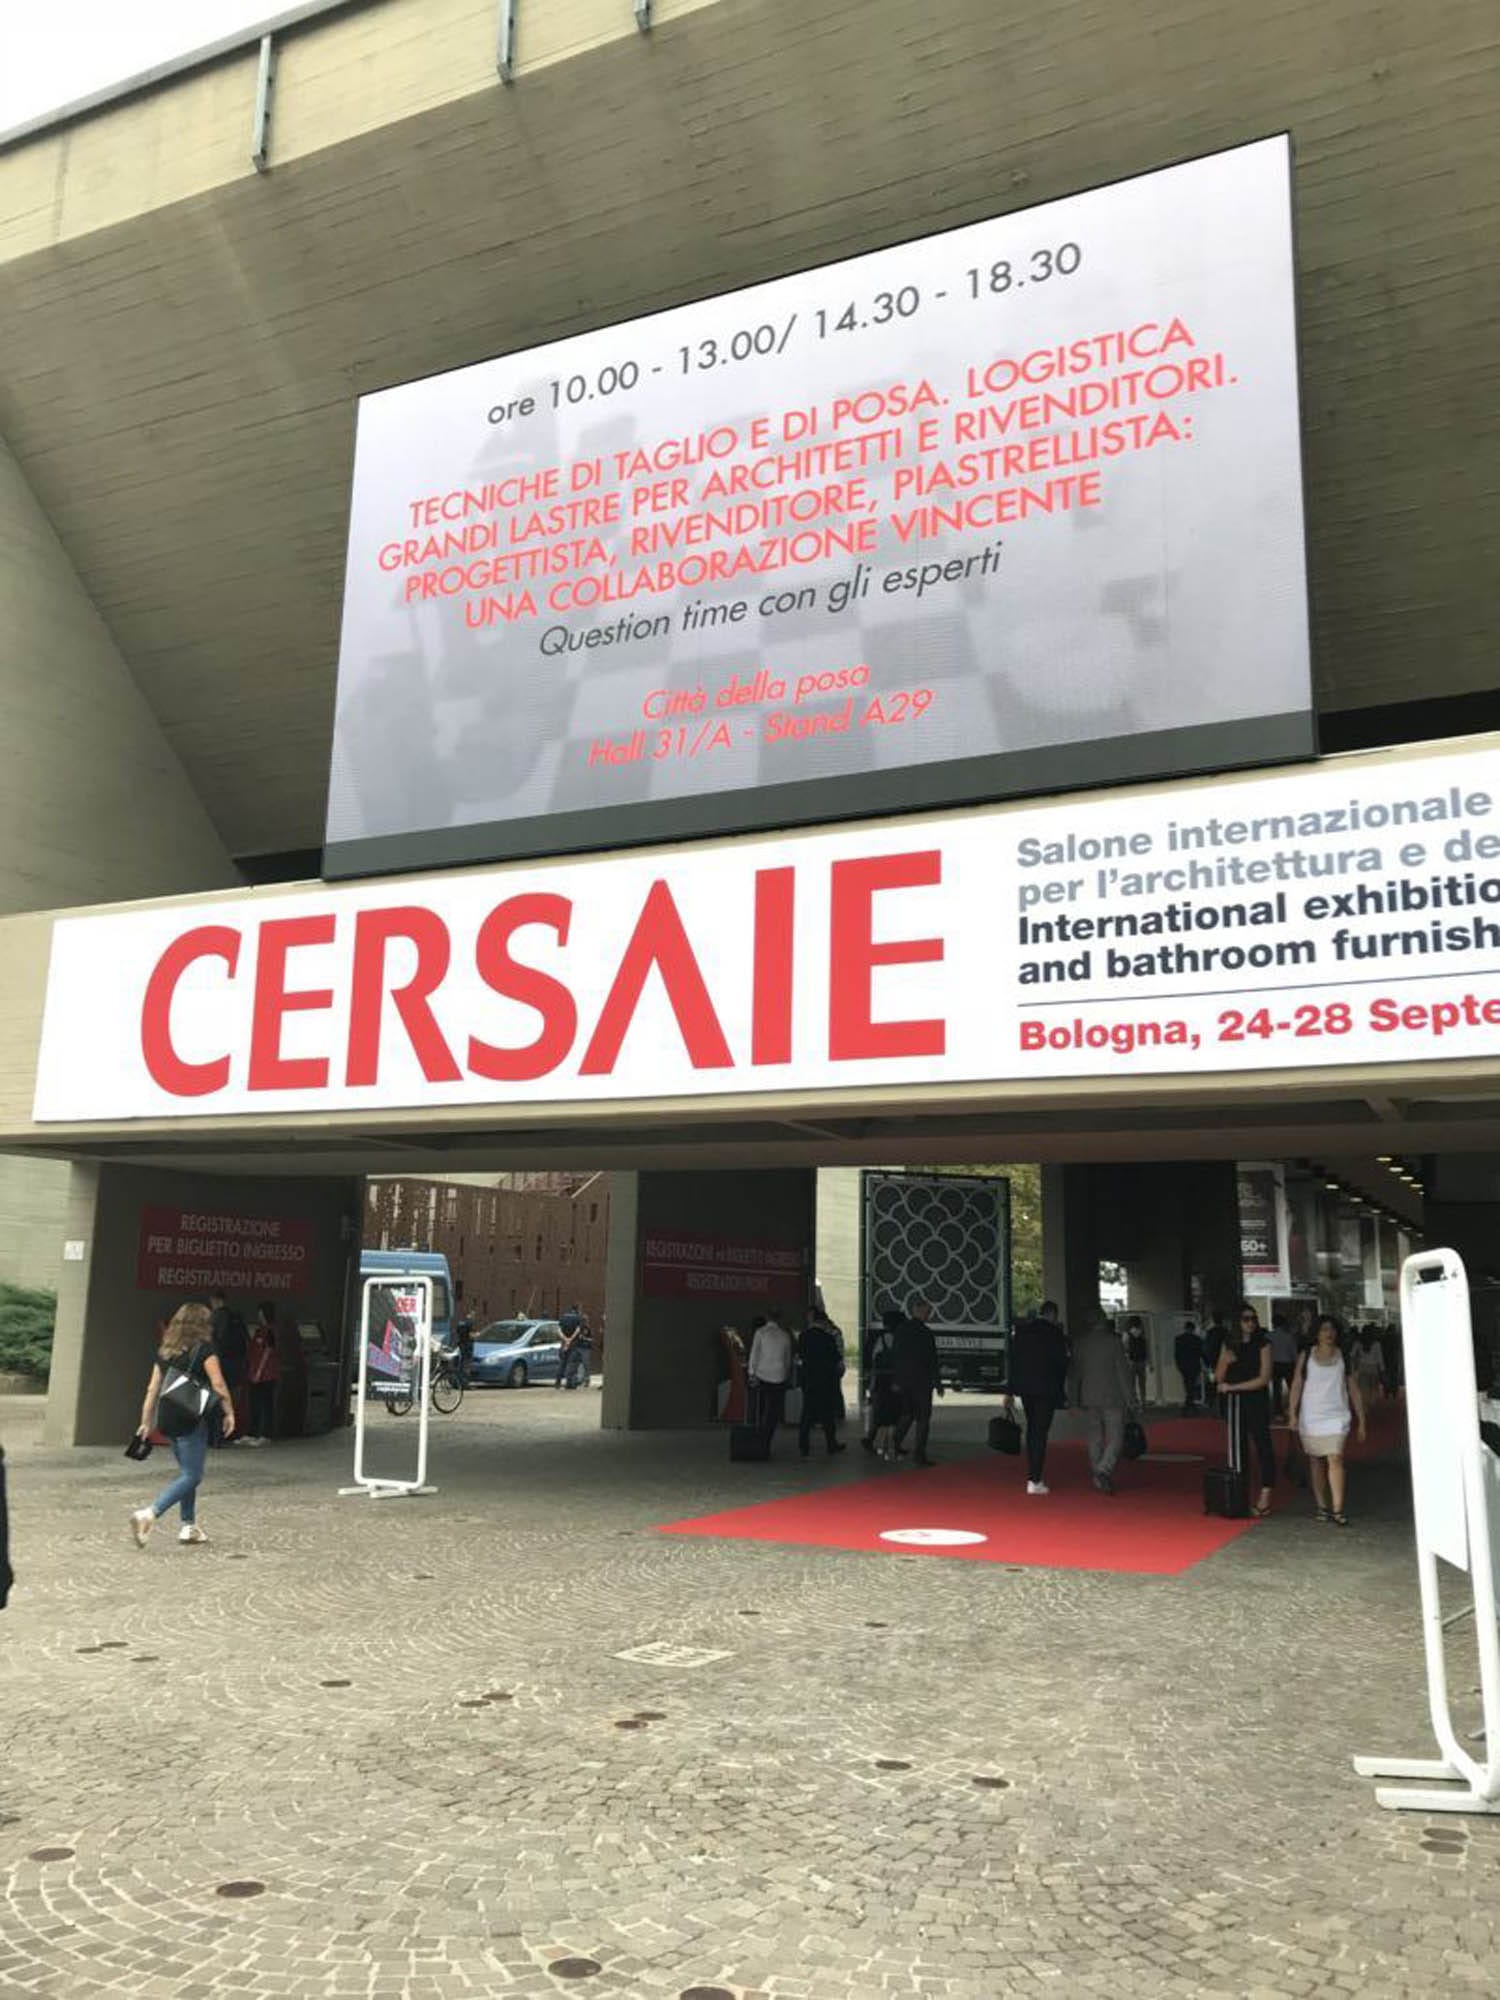 The Cersaie tile show entrance